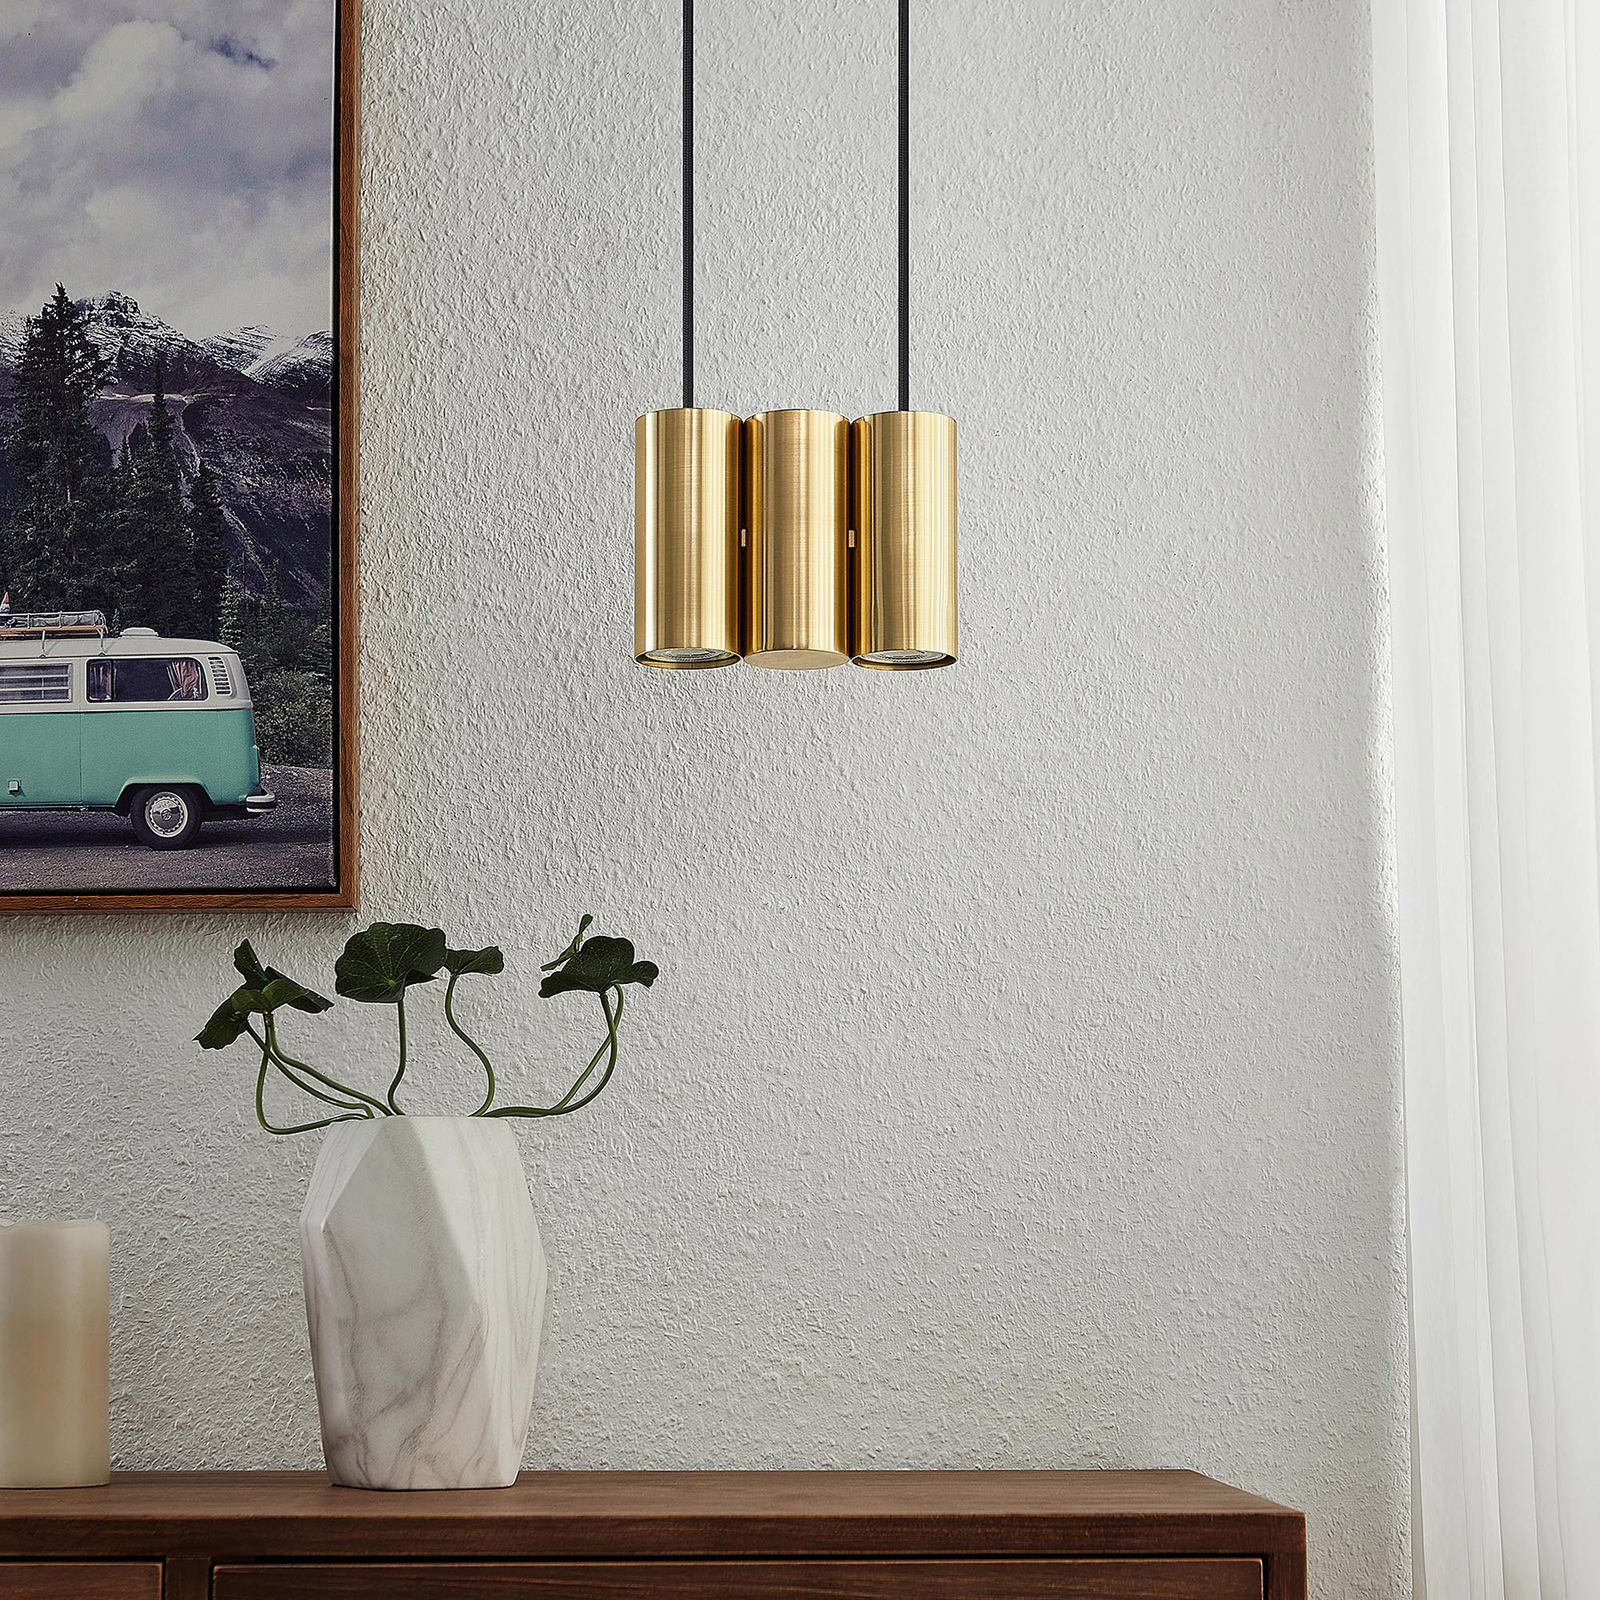 Lucande Cesur hanging light, 3-bulb, brass